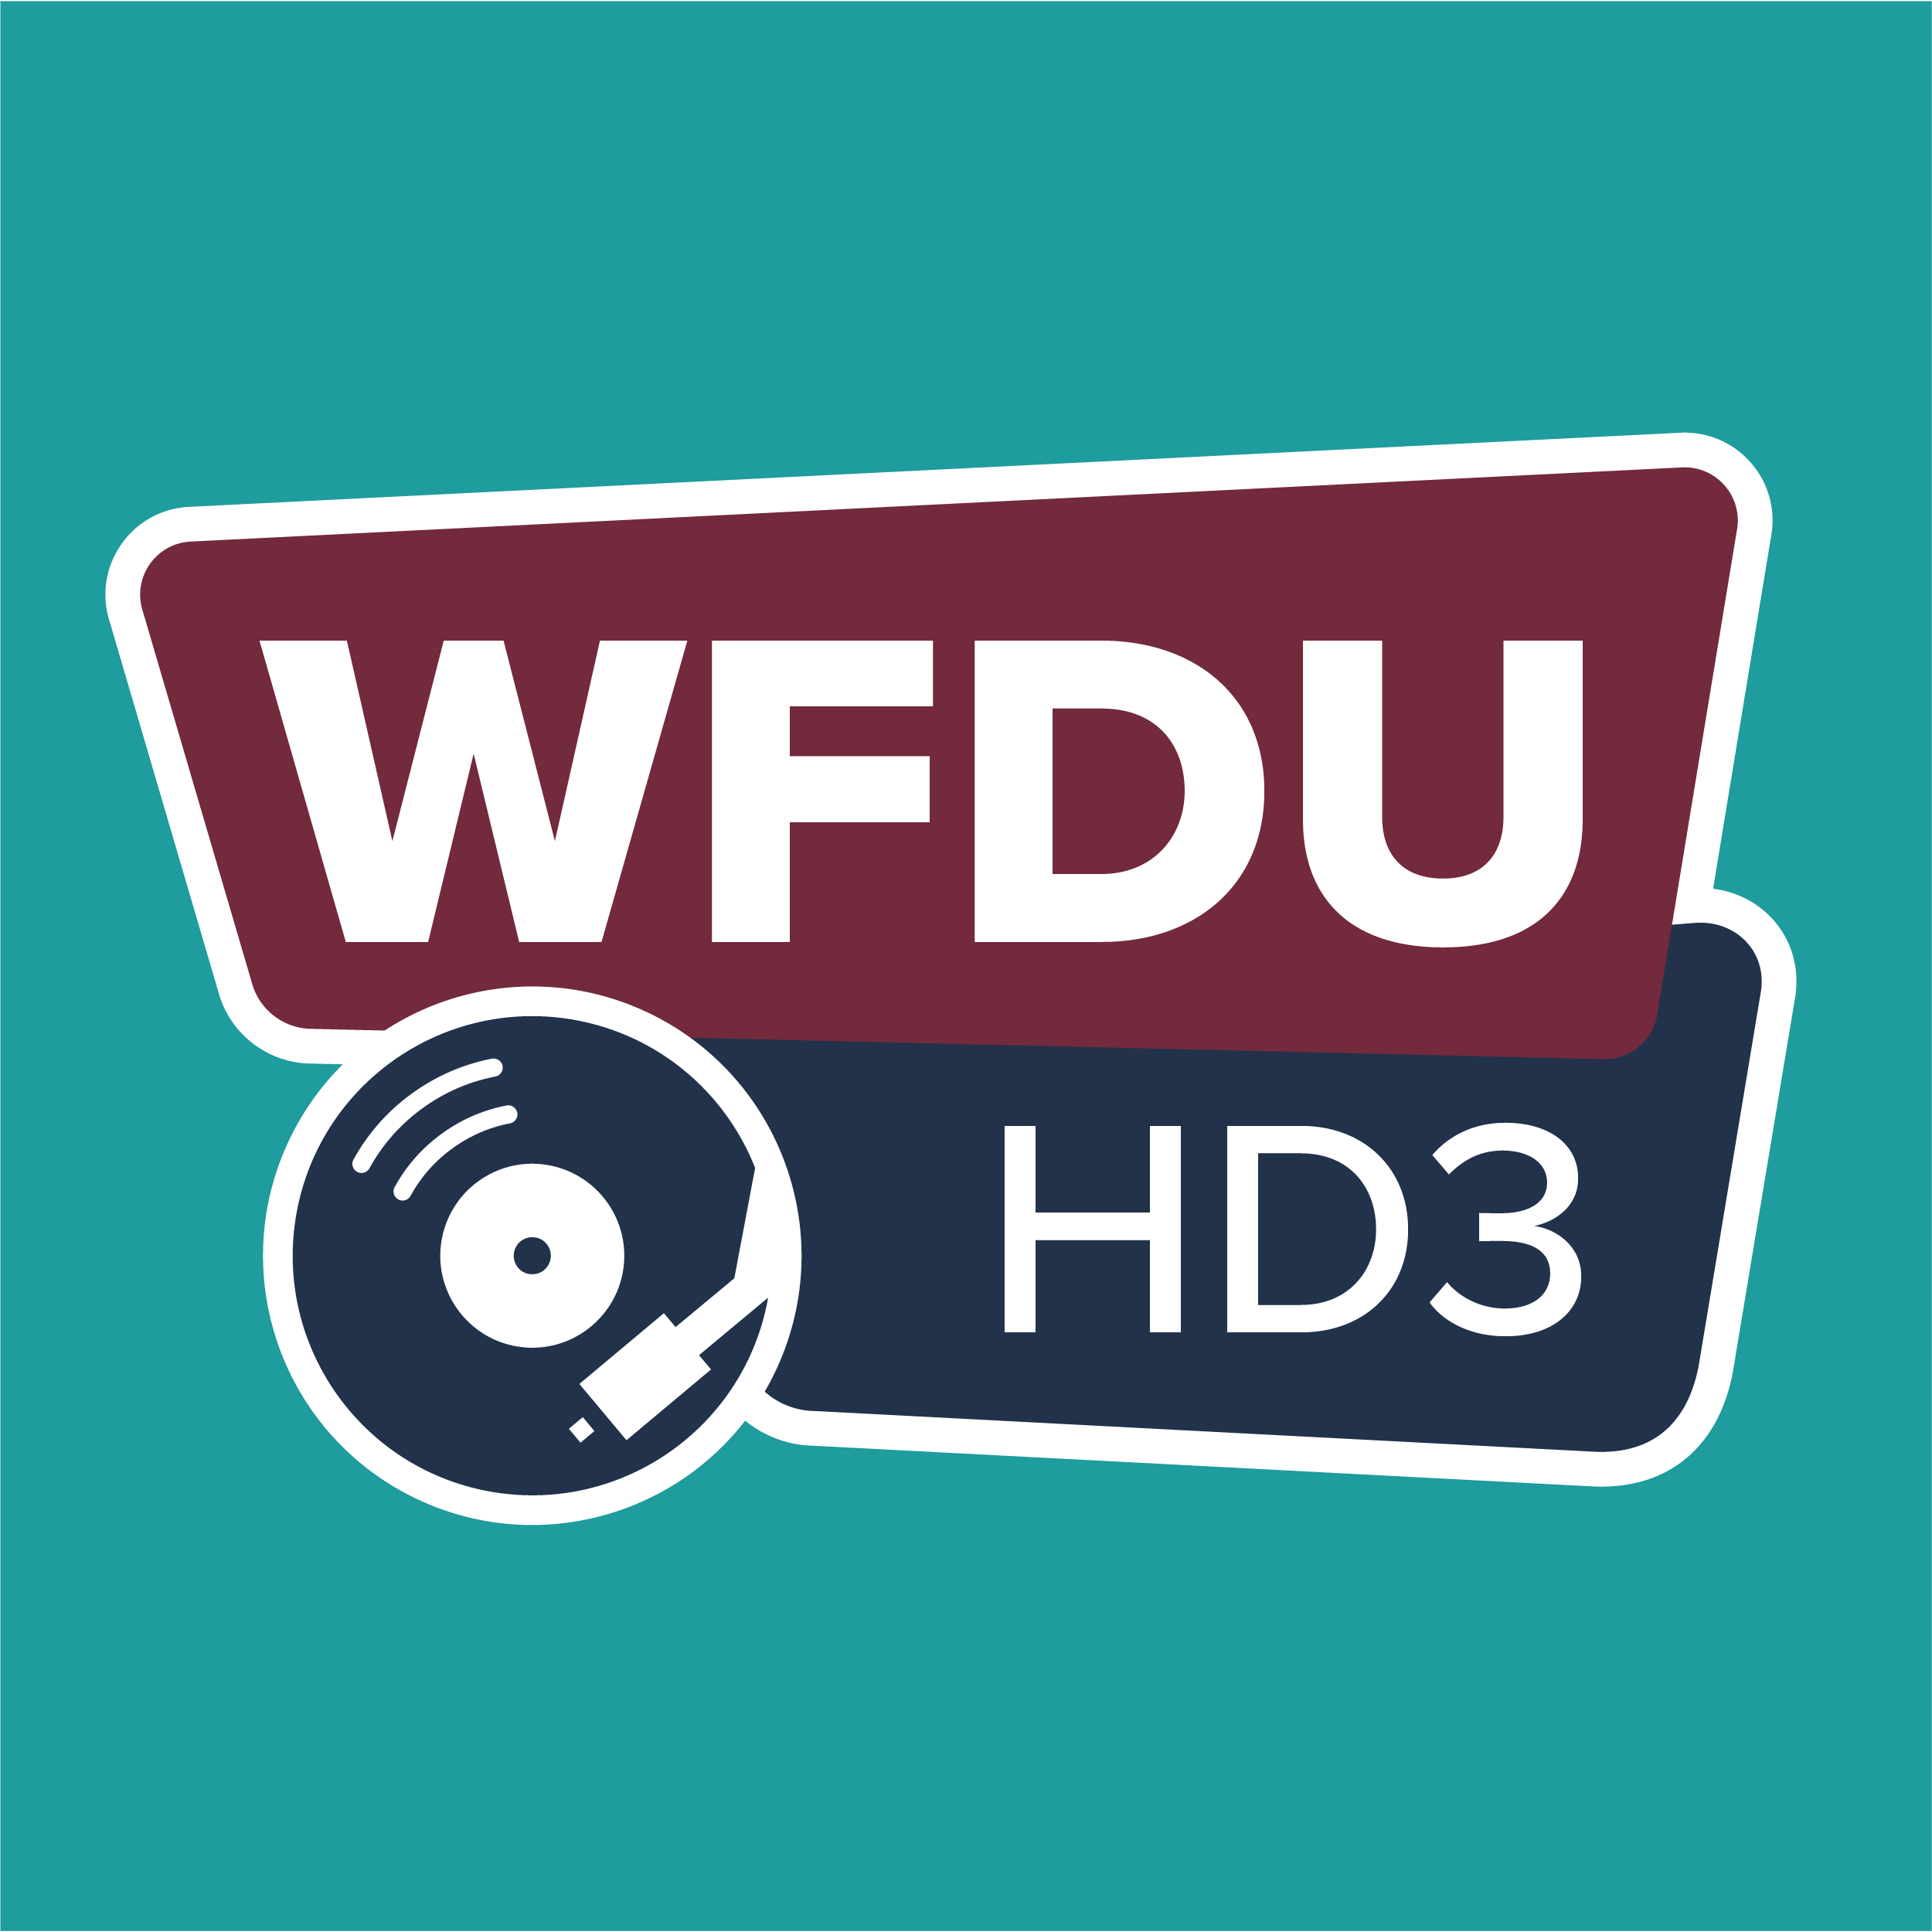 WFDU HD3